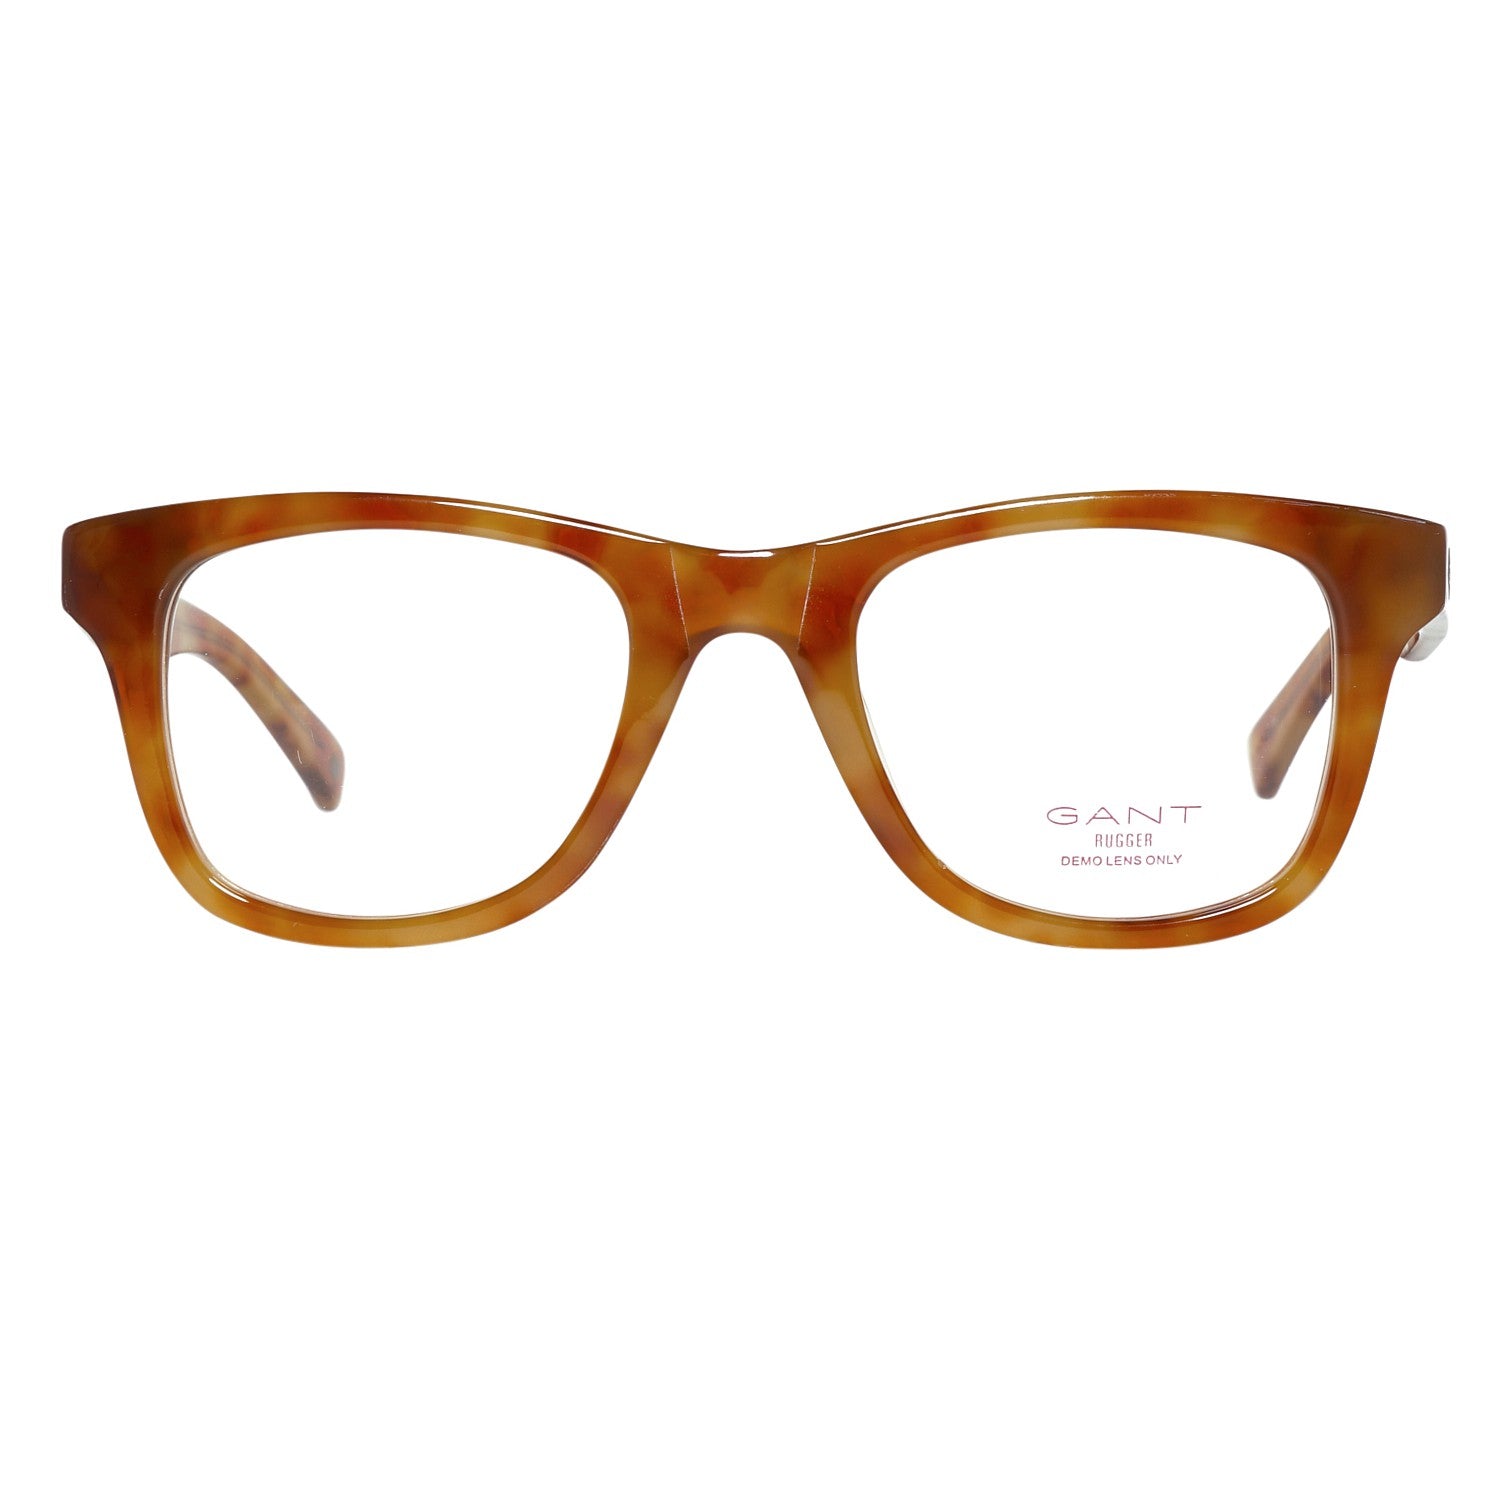 Gant Frames Gant Glasses Frames GRA034 K83 50 | GR WOLFIE LTO 50 Eyeglasses Eyewear UK USA Australia 